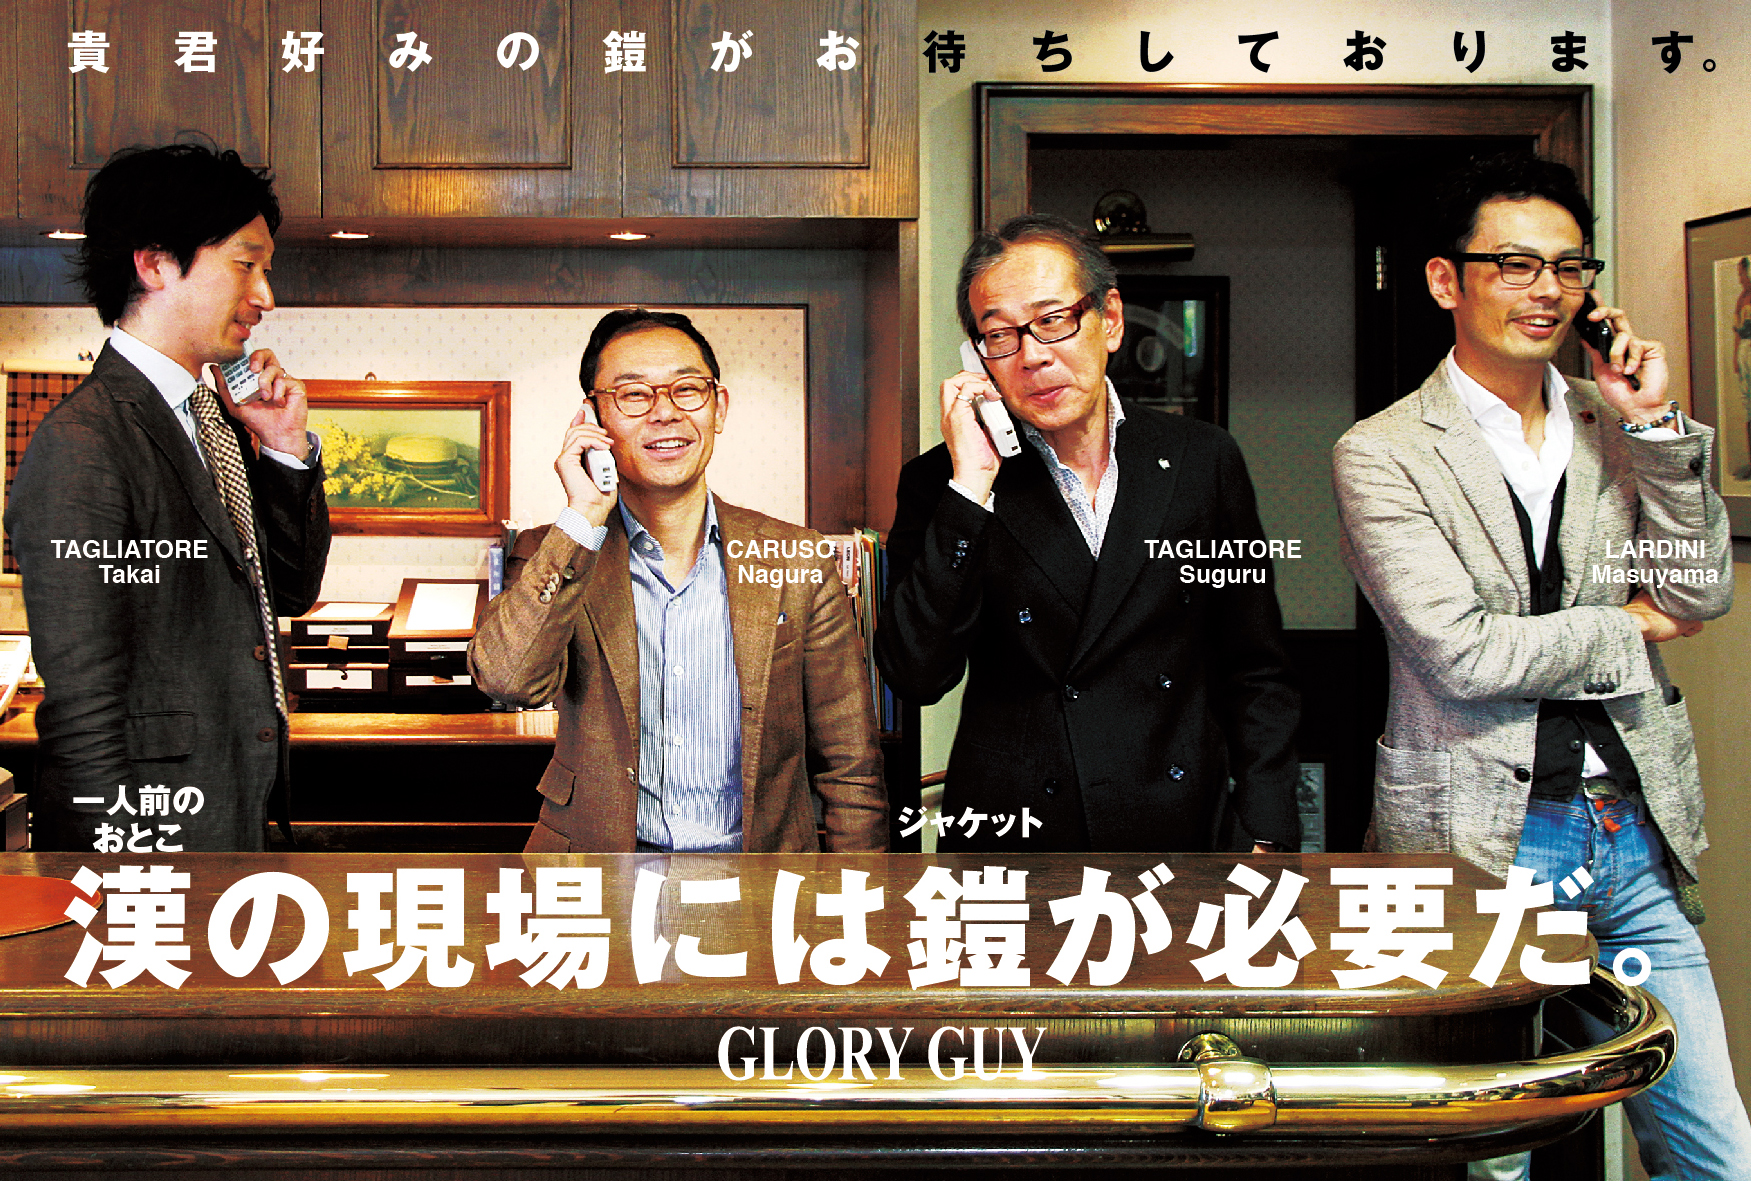 http://www.gloryguy.jp/gloryguy/ggdm_05.jpg